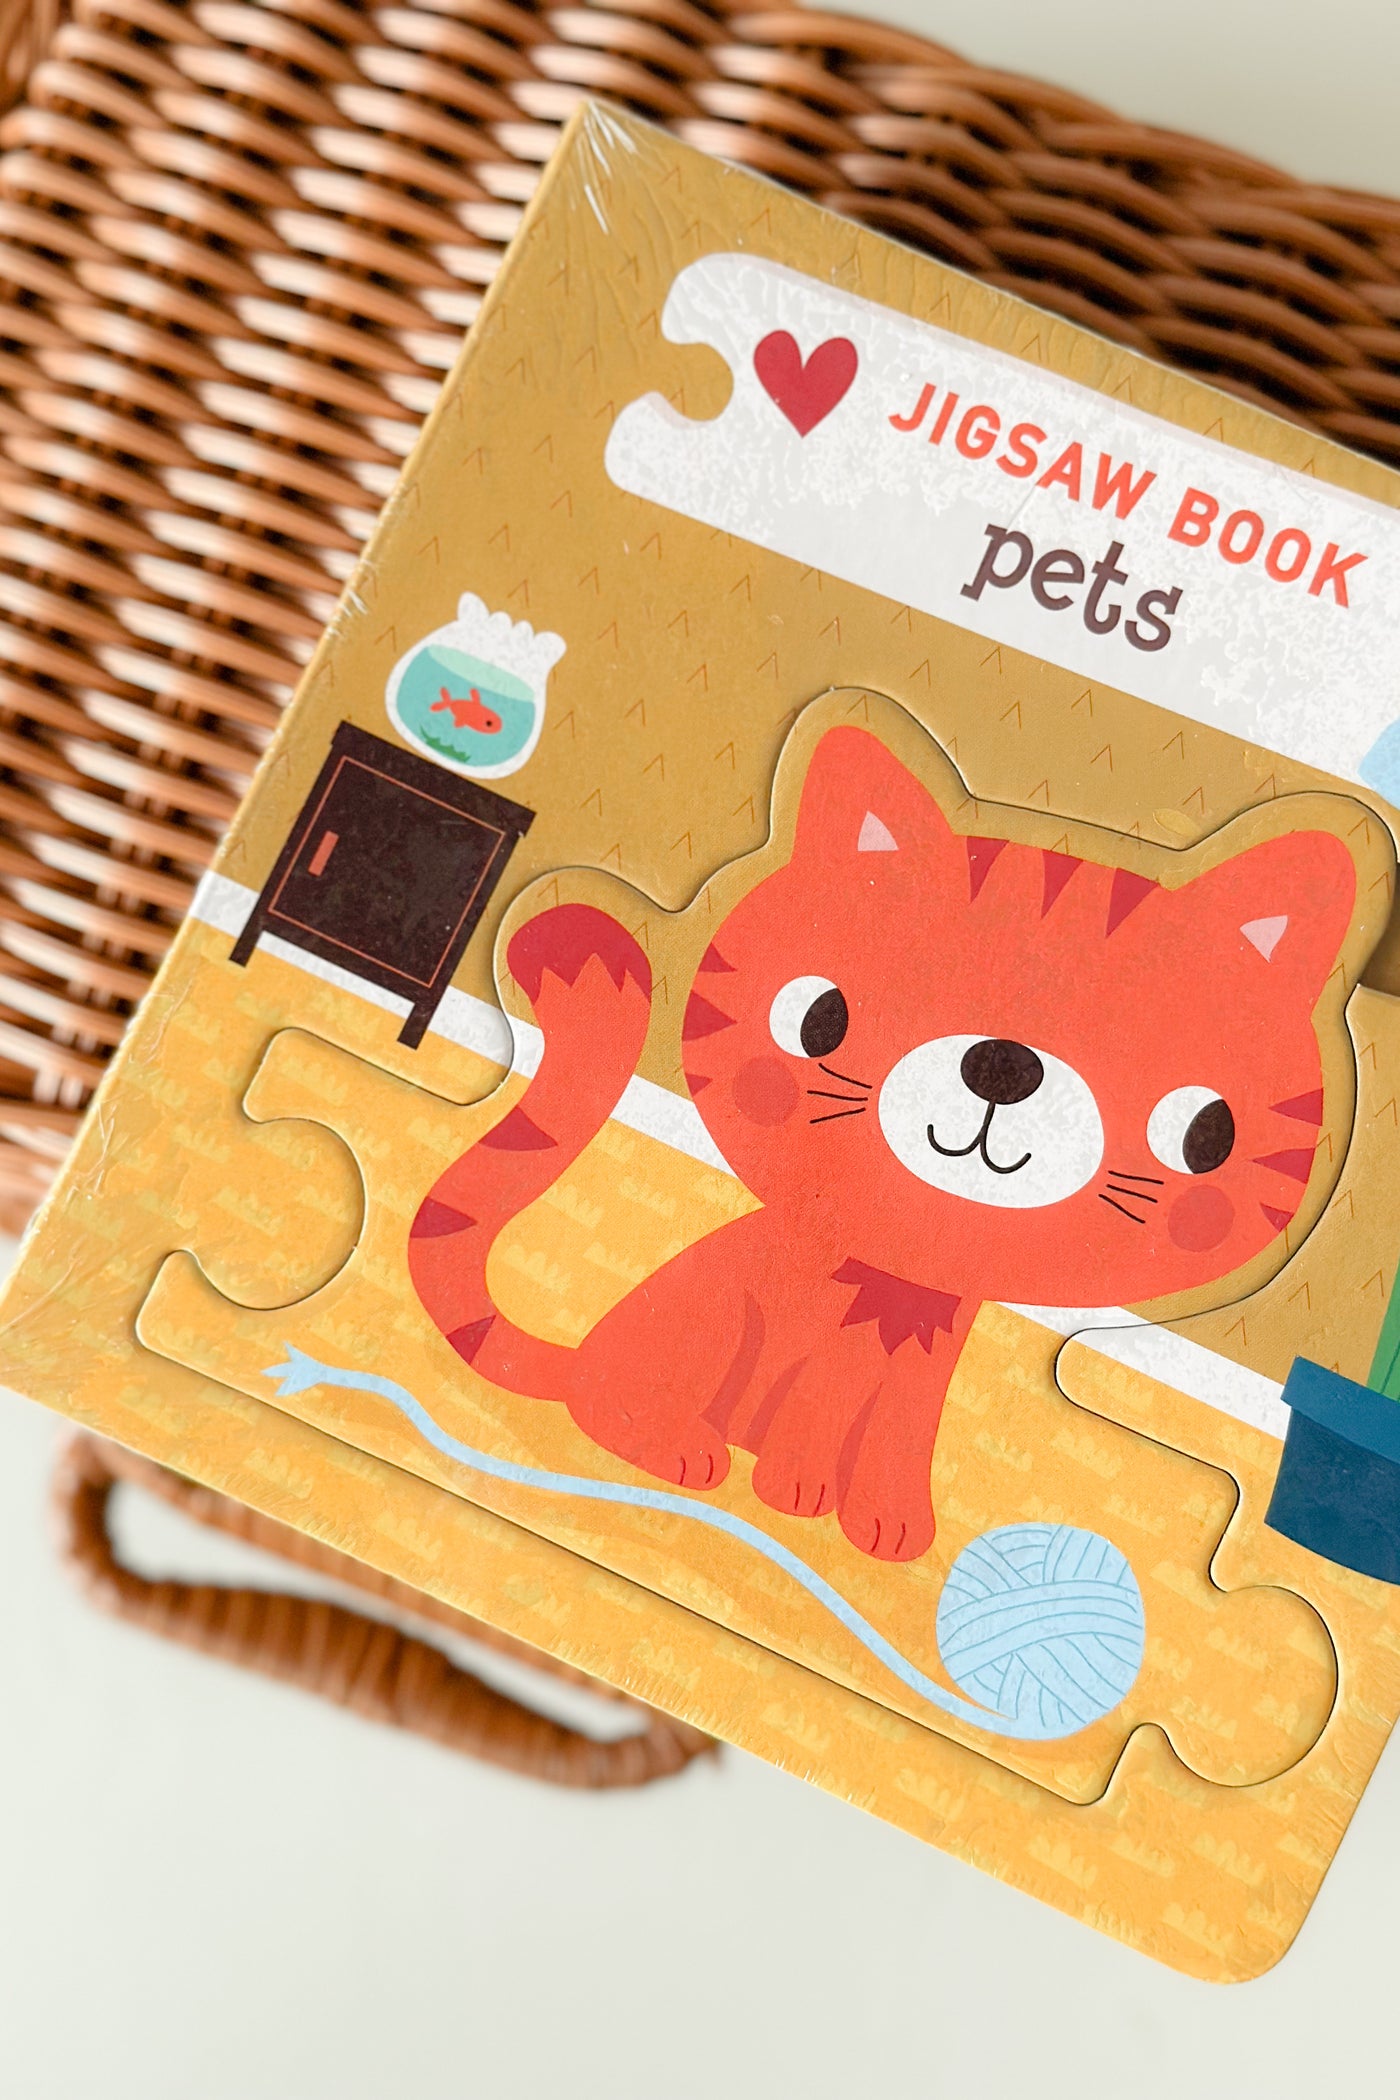 Jigsaw Book: Pets